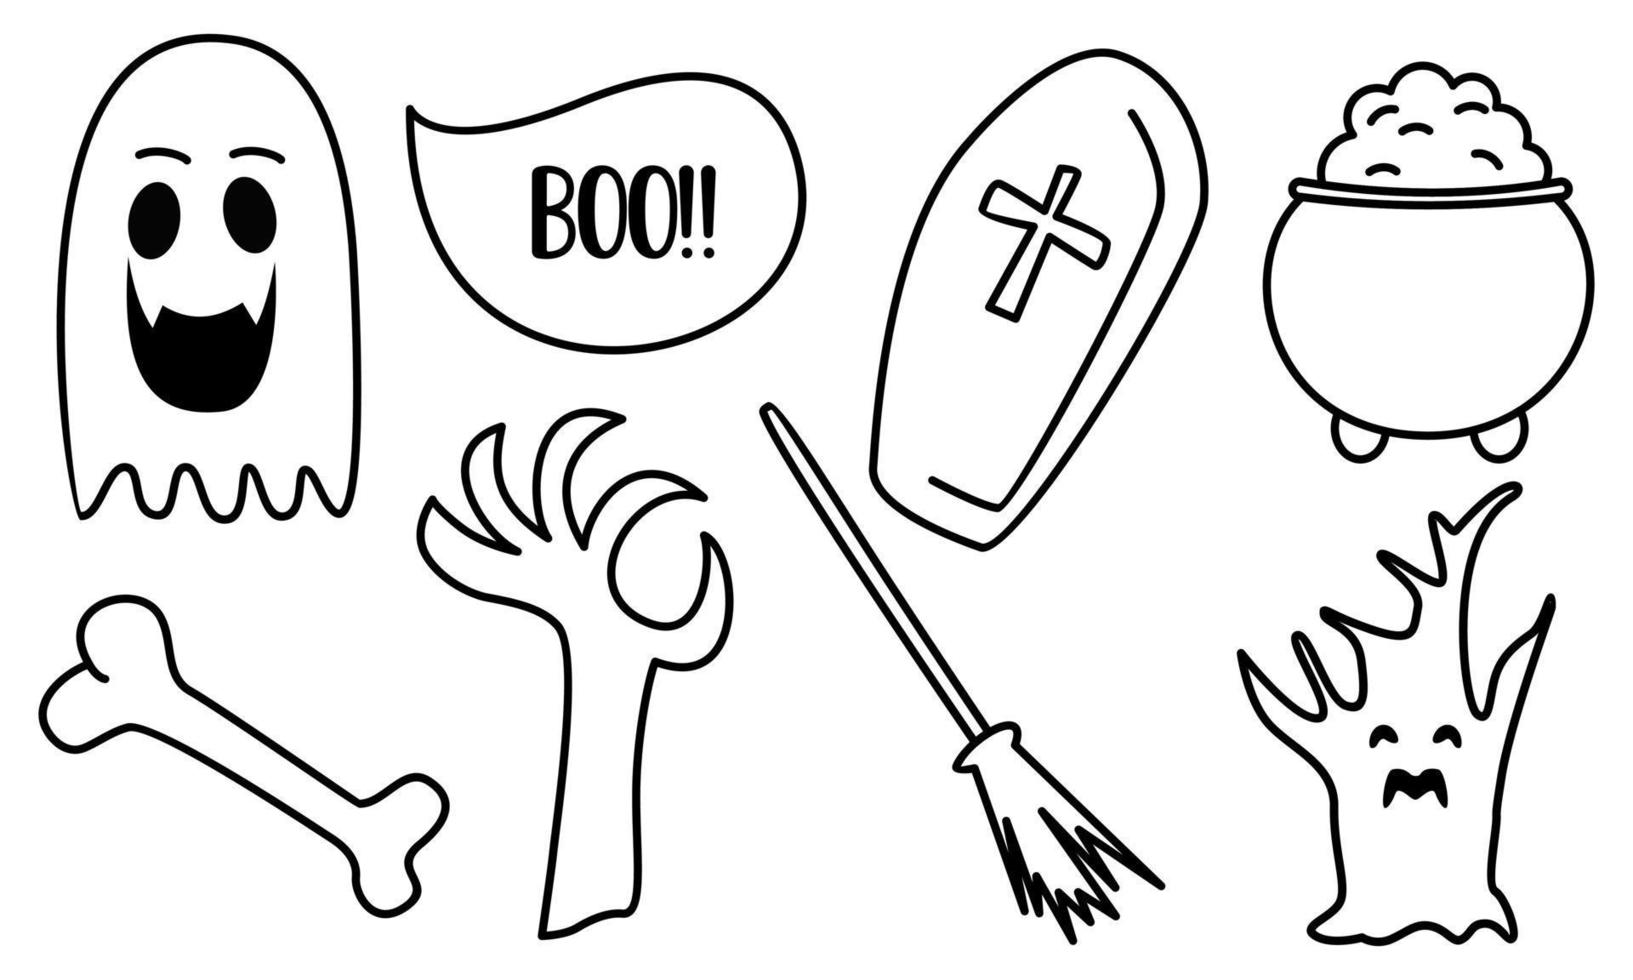 elementos gráficos para vetor de doodle de halloween. fundo de cartão de feliz dia das bruxas